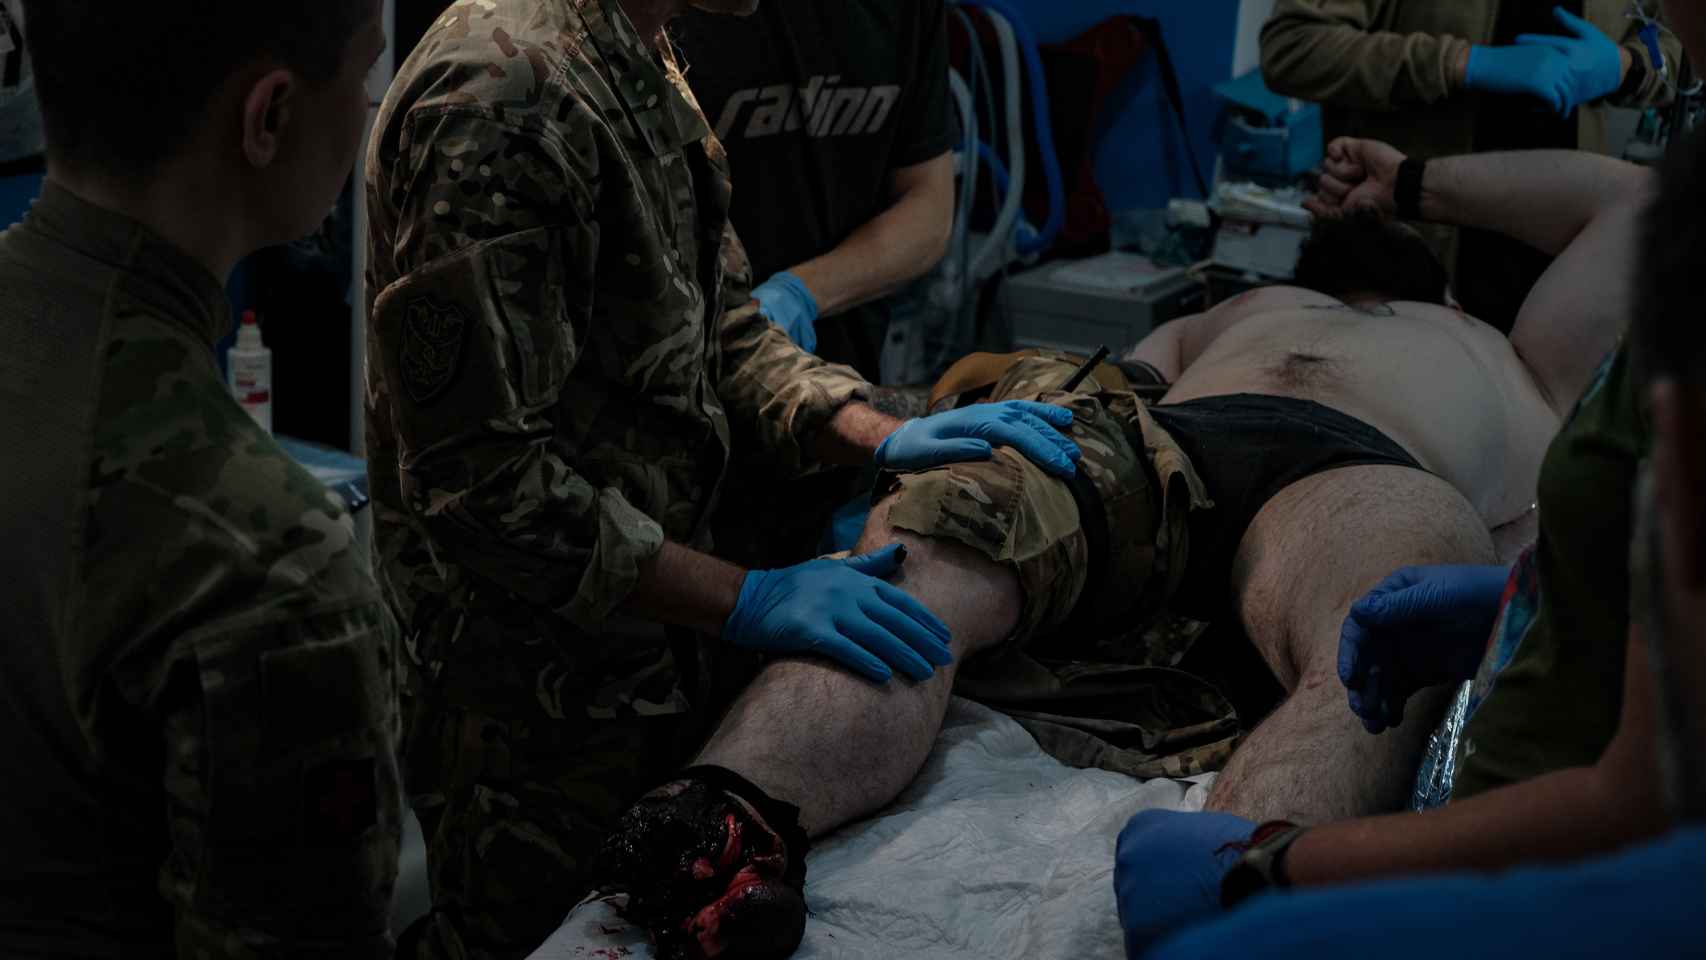 Un soldado ucraniano llega al punto médico de estabilización, tras haber pisado una mina antipersona en el frente de combate de Bakhmut